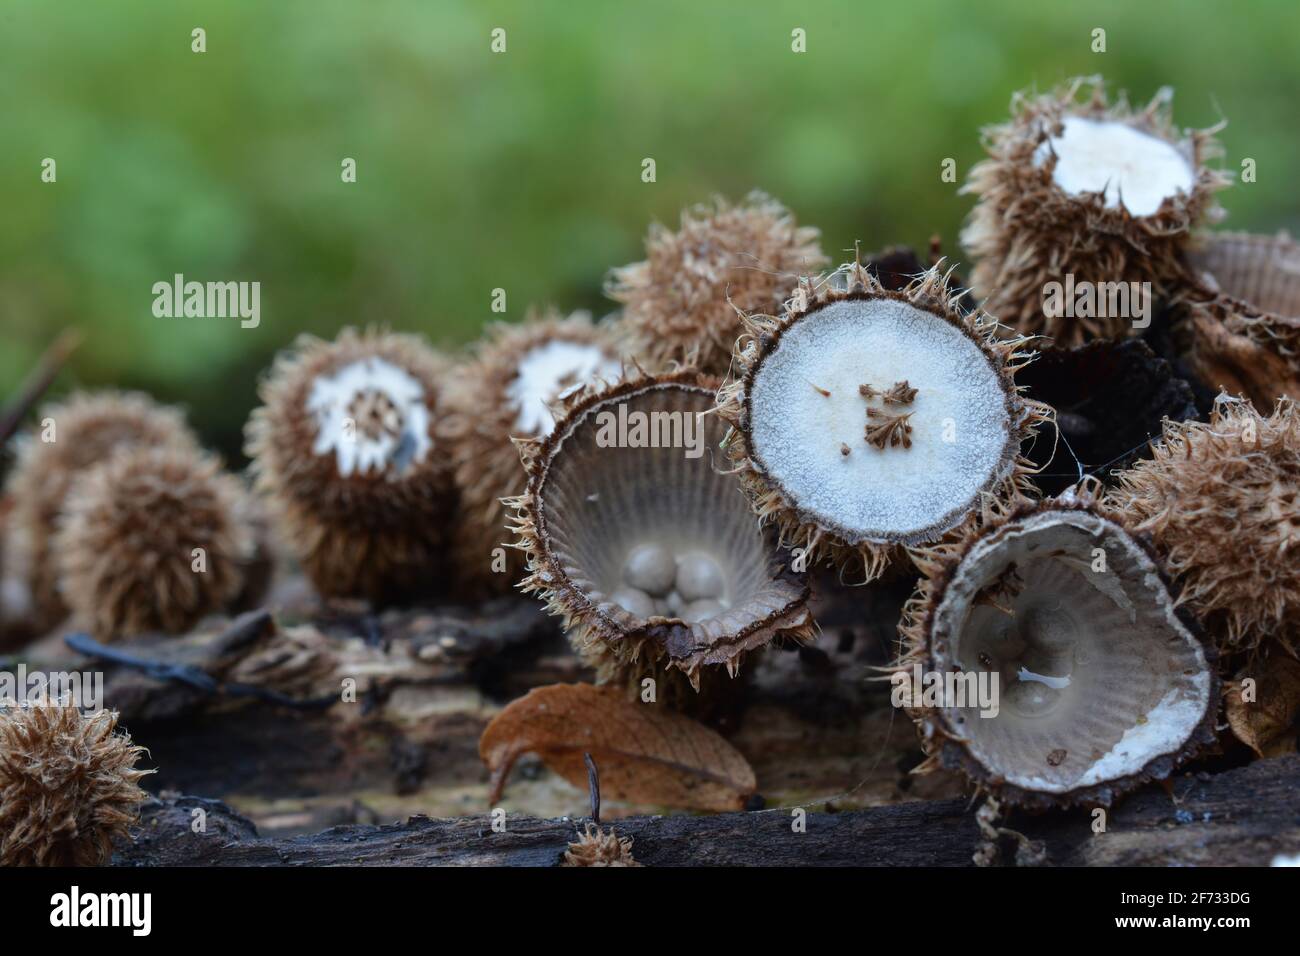 Cyathus striatus, champignon de nid d'oiseau, champignon d'apparence inhabituelle à différents stades de développement dans l'habitat naturel sur le bois pourri en plus des mounons Banque D'Images